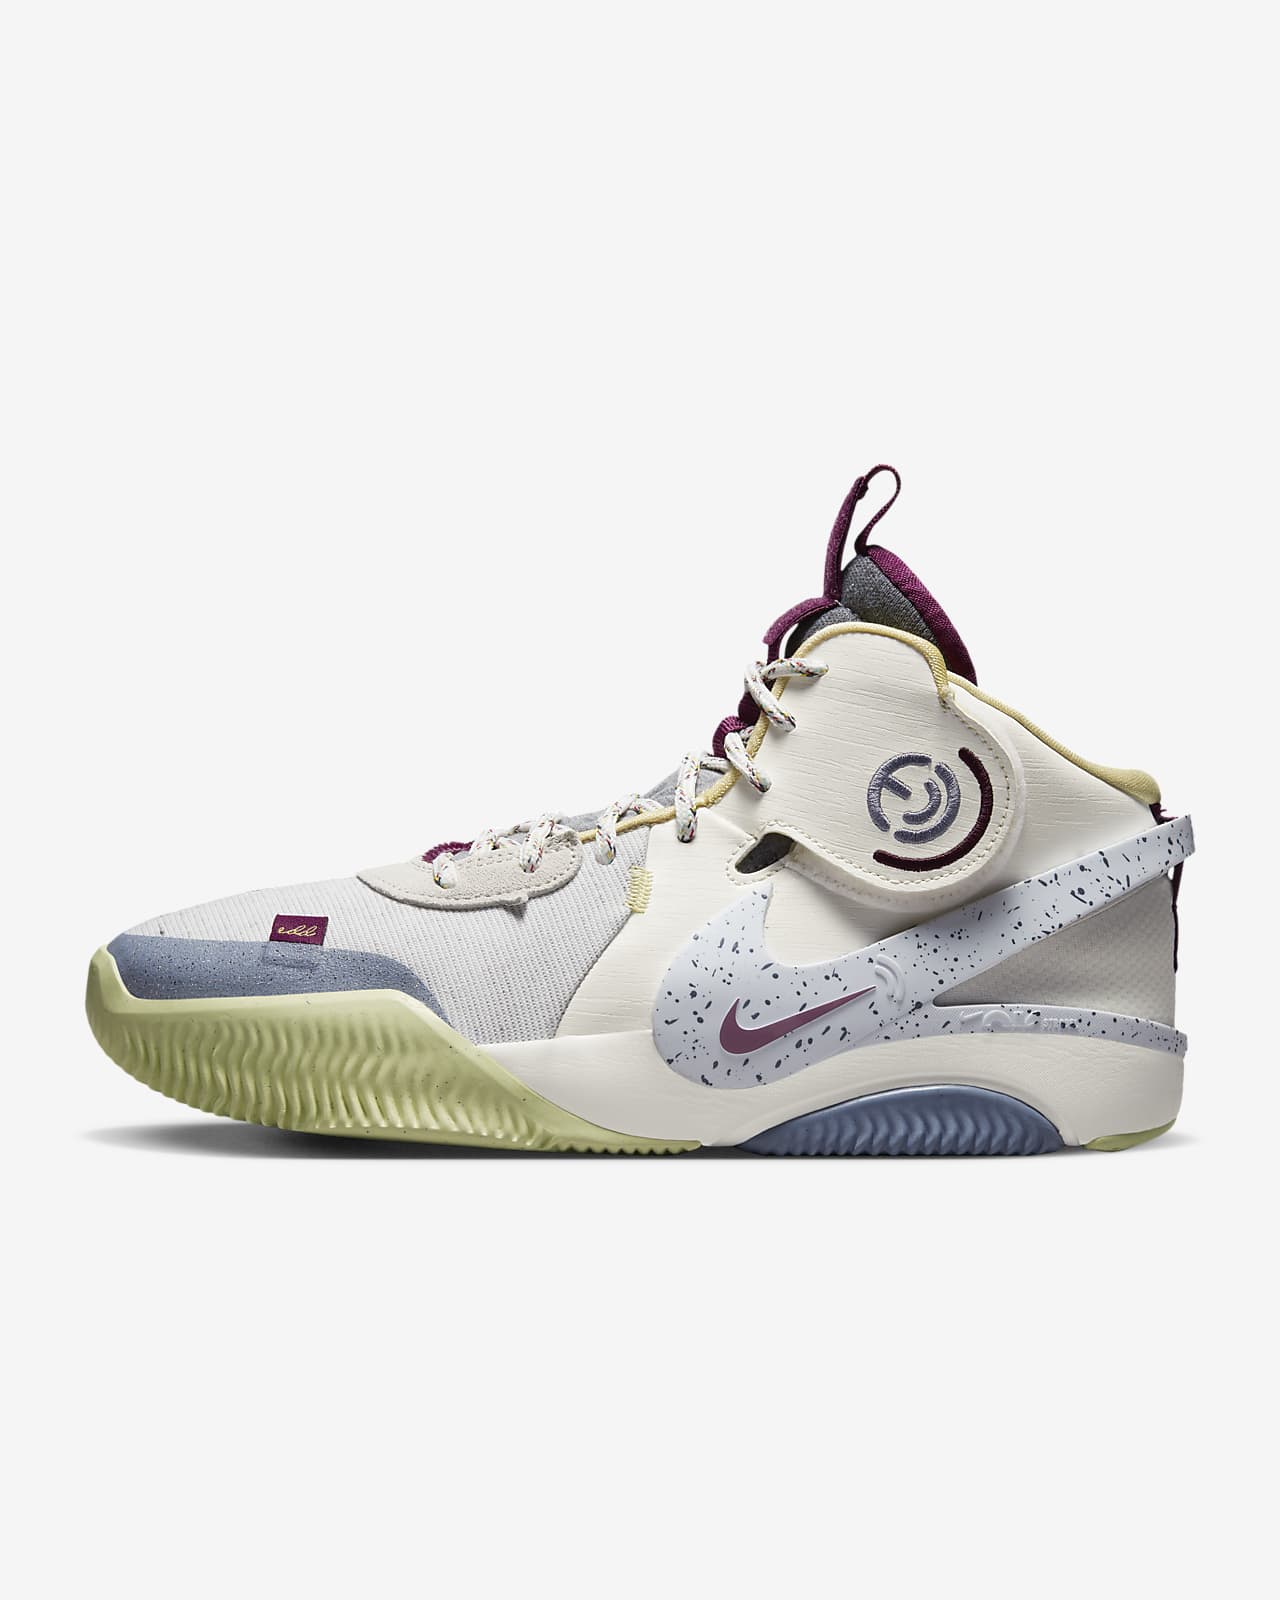 Serpiente sonido Completamente seco Nike Air Deldon "Deldon Designs" Zapatillas de baloncesto. Nike ES